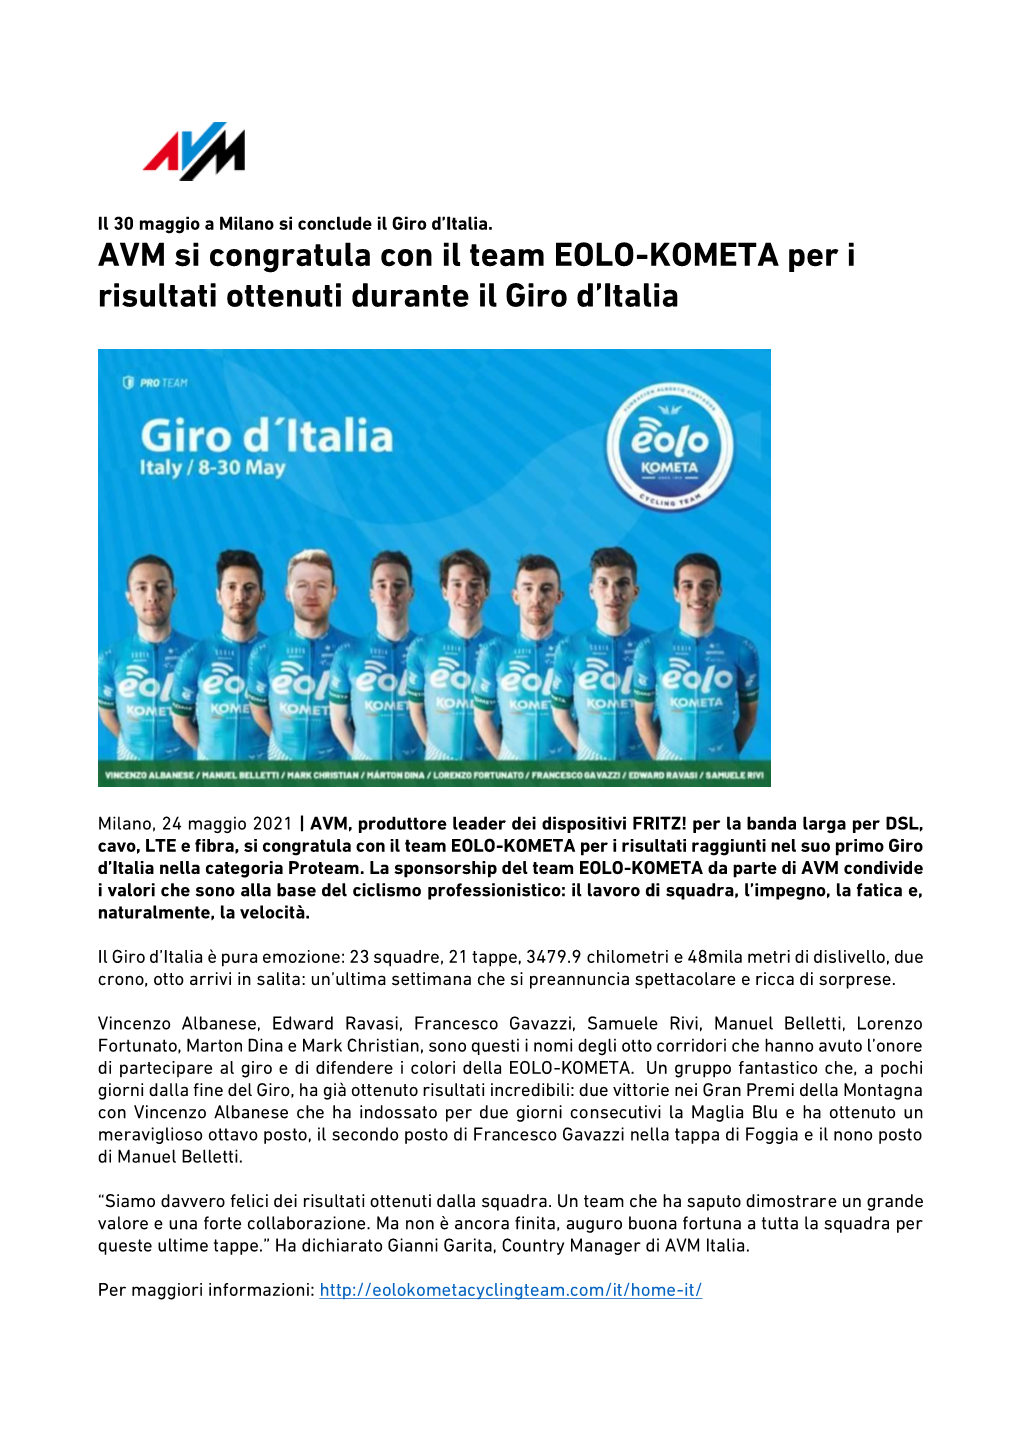 AVM Si Congratula Con Il Team EOLO-KOMETA Per I Risultati Ottenuti Durante Il Giro D'italia